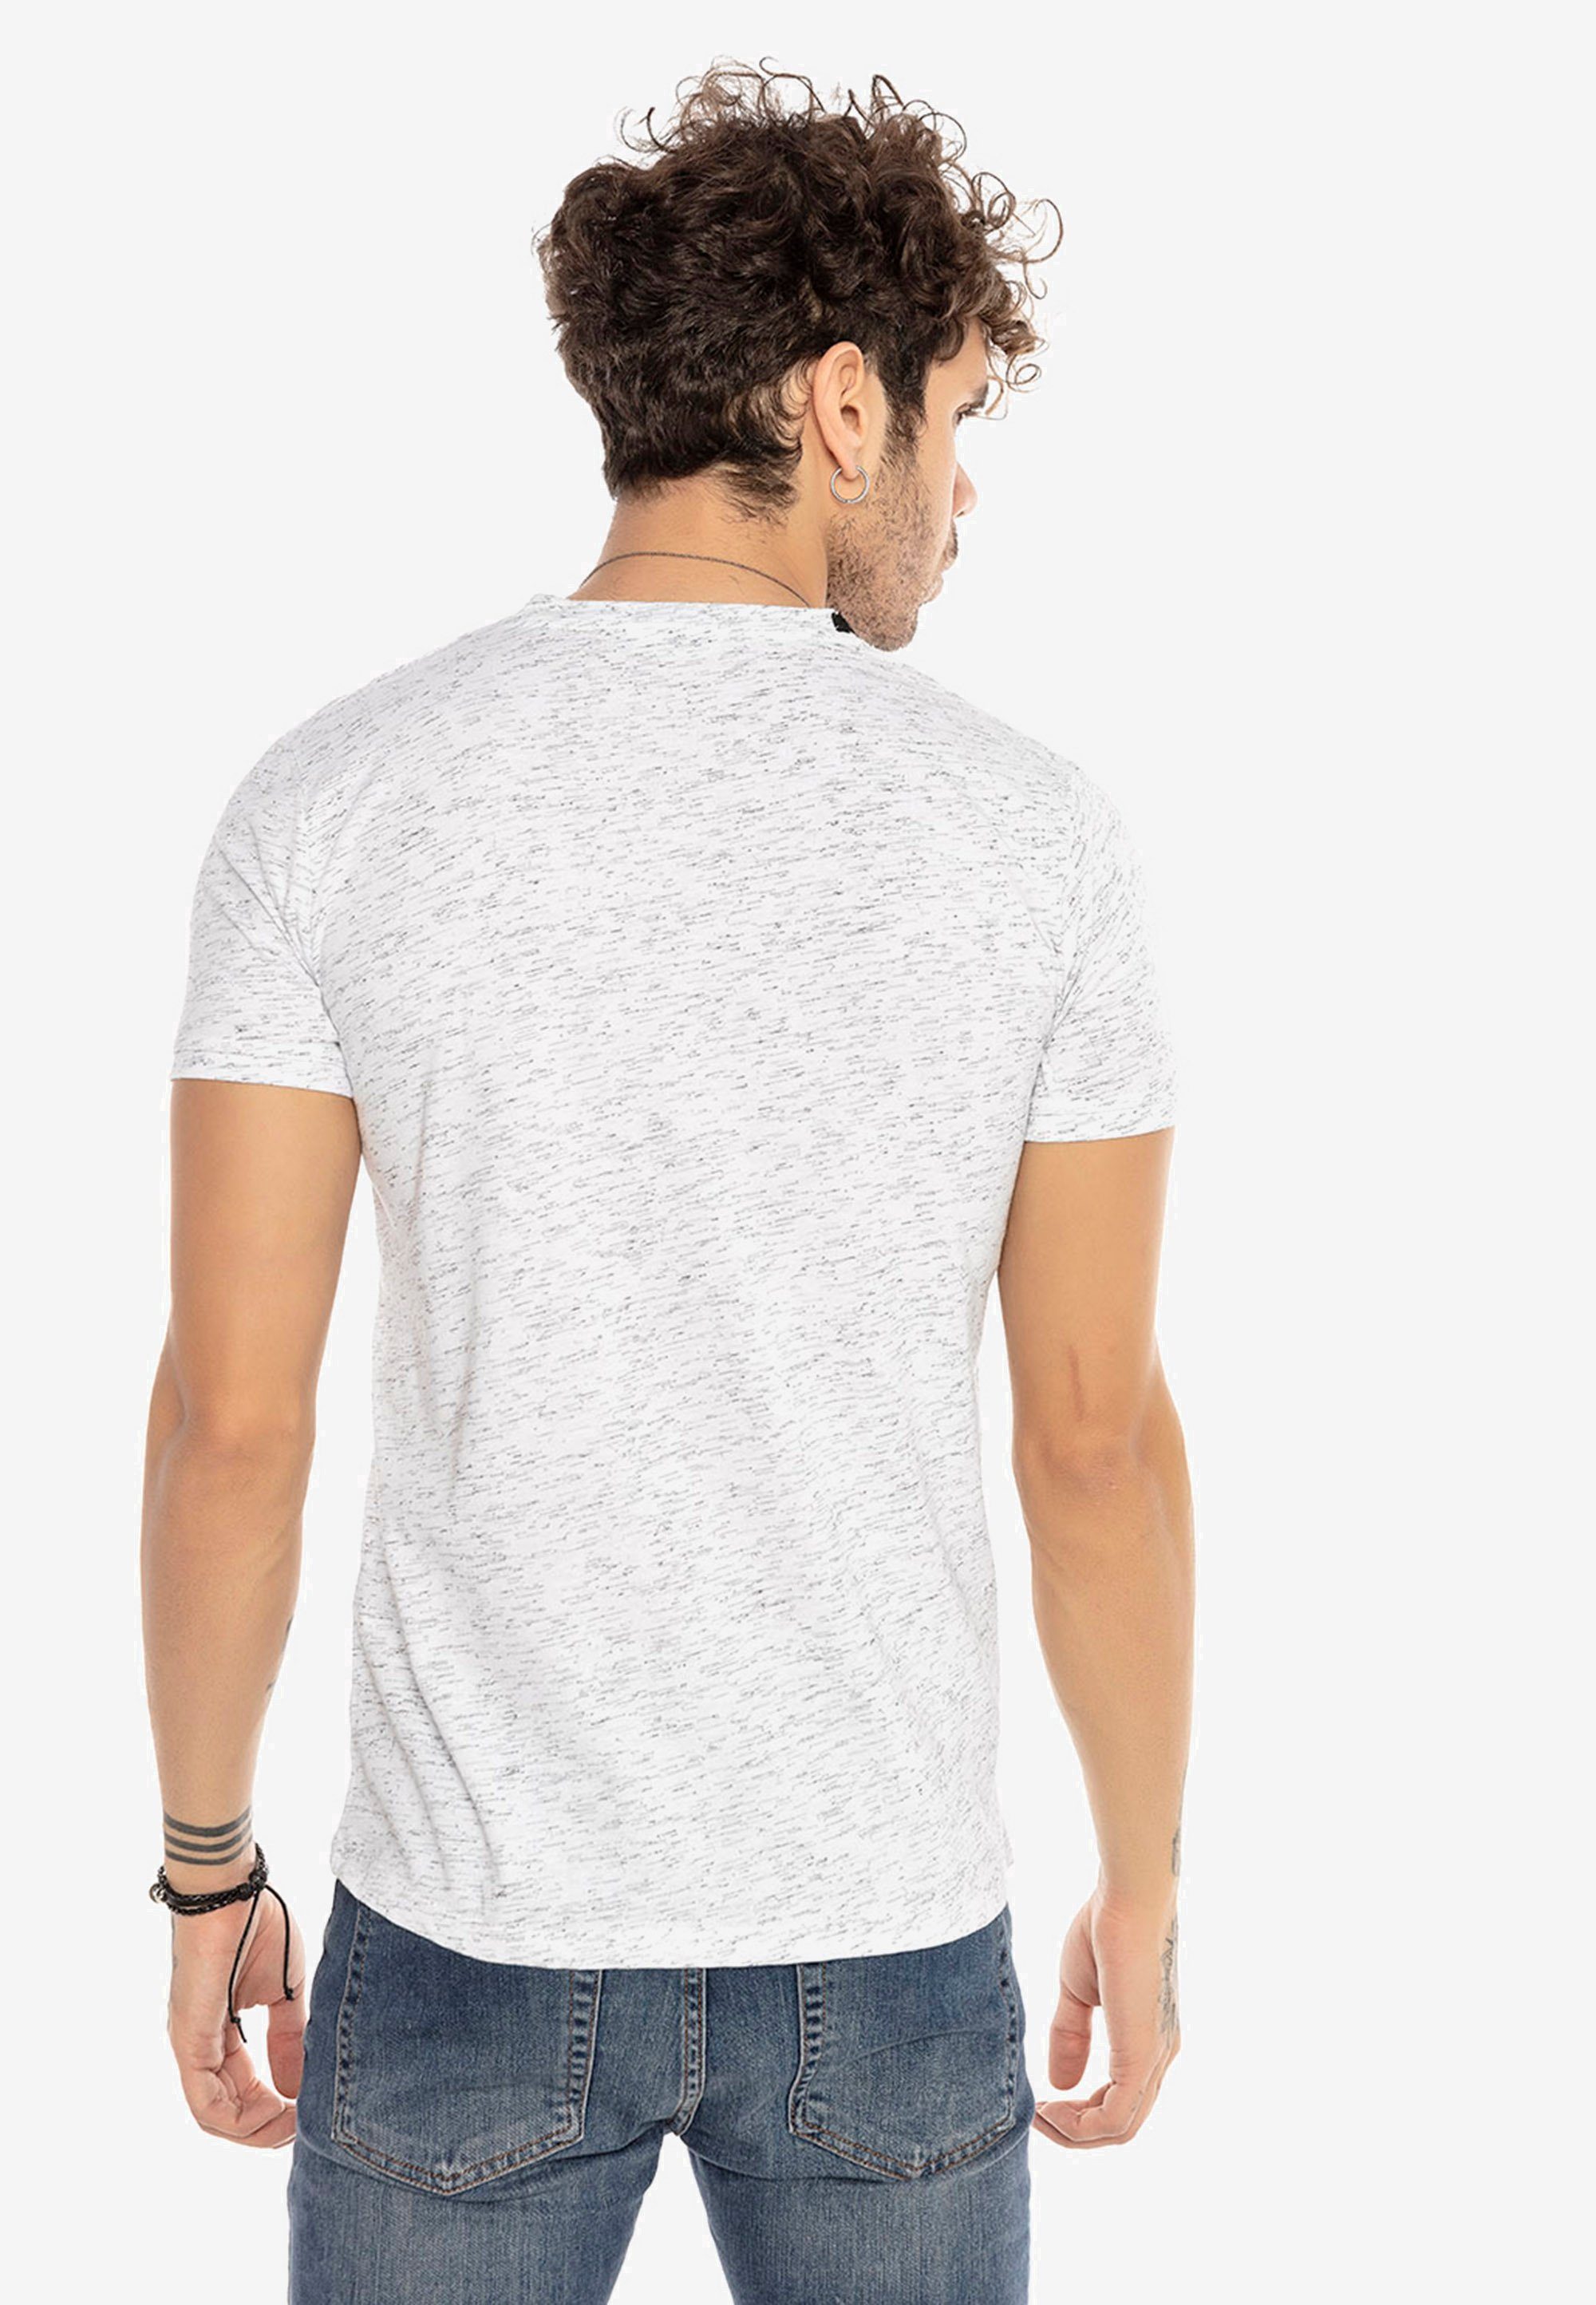 RedBridge mit Escondido weiß Kontrast-Saum T-Shirt